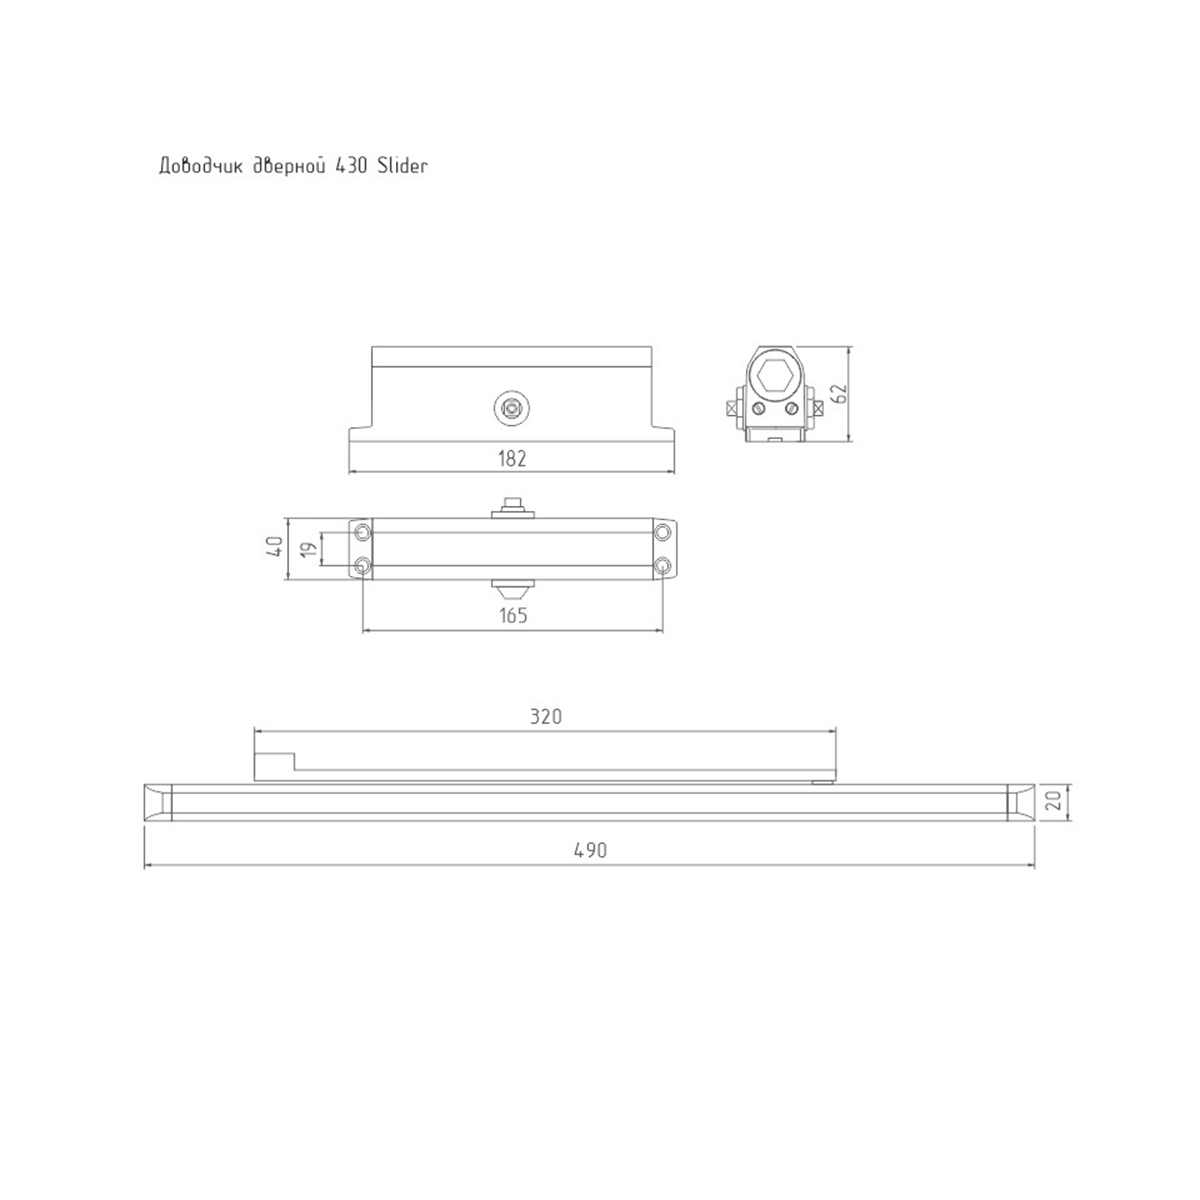 Доводчик дверной  430 isparus slider графит (масса двери 40-100 кг) (1/10) "нора-м"